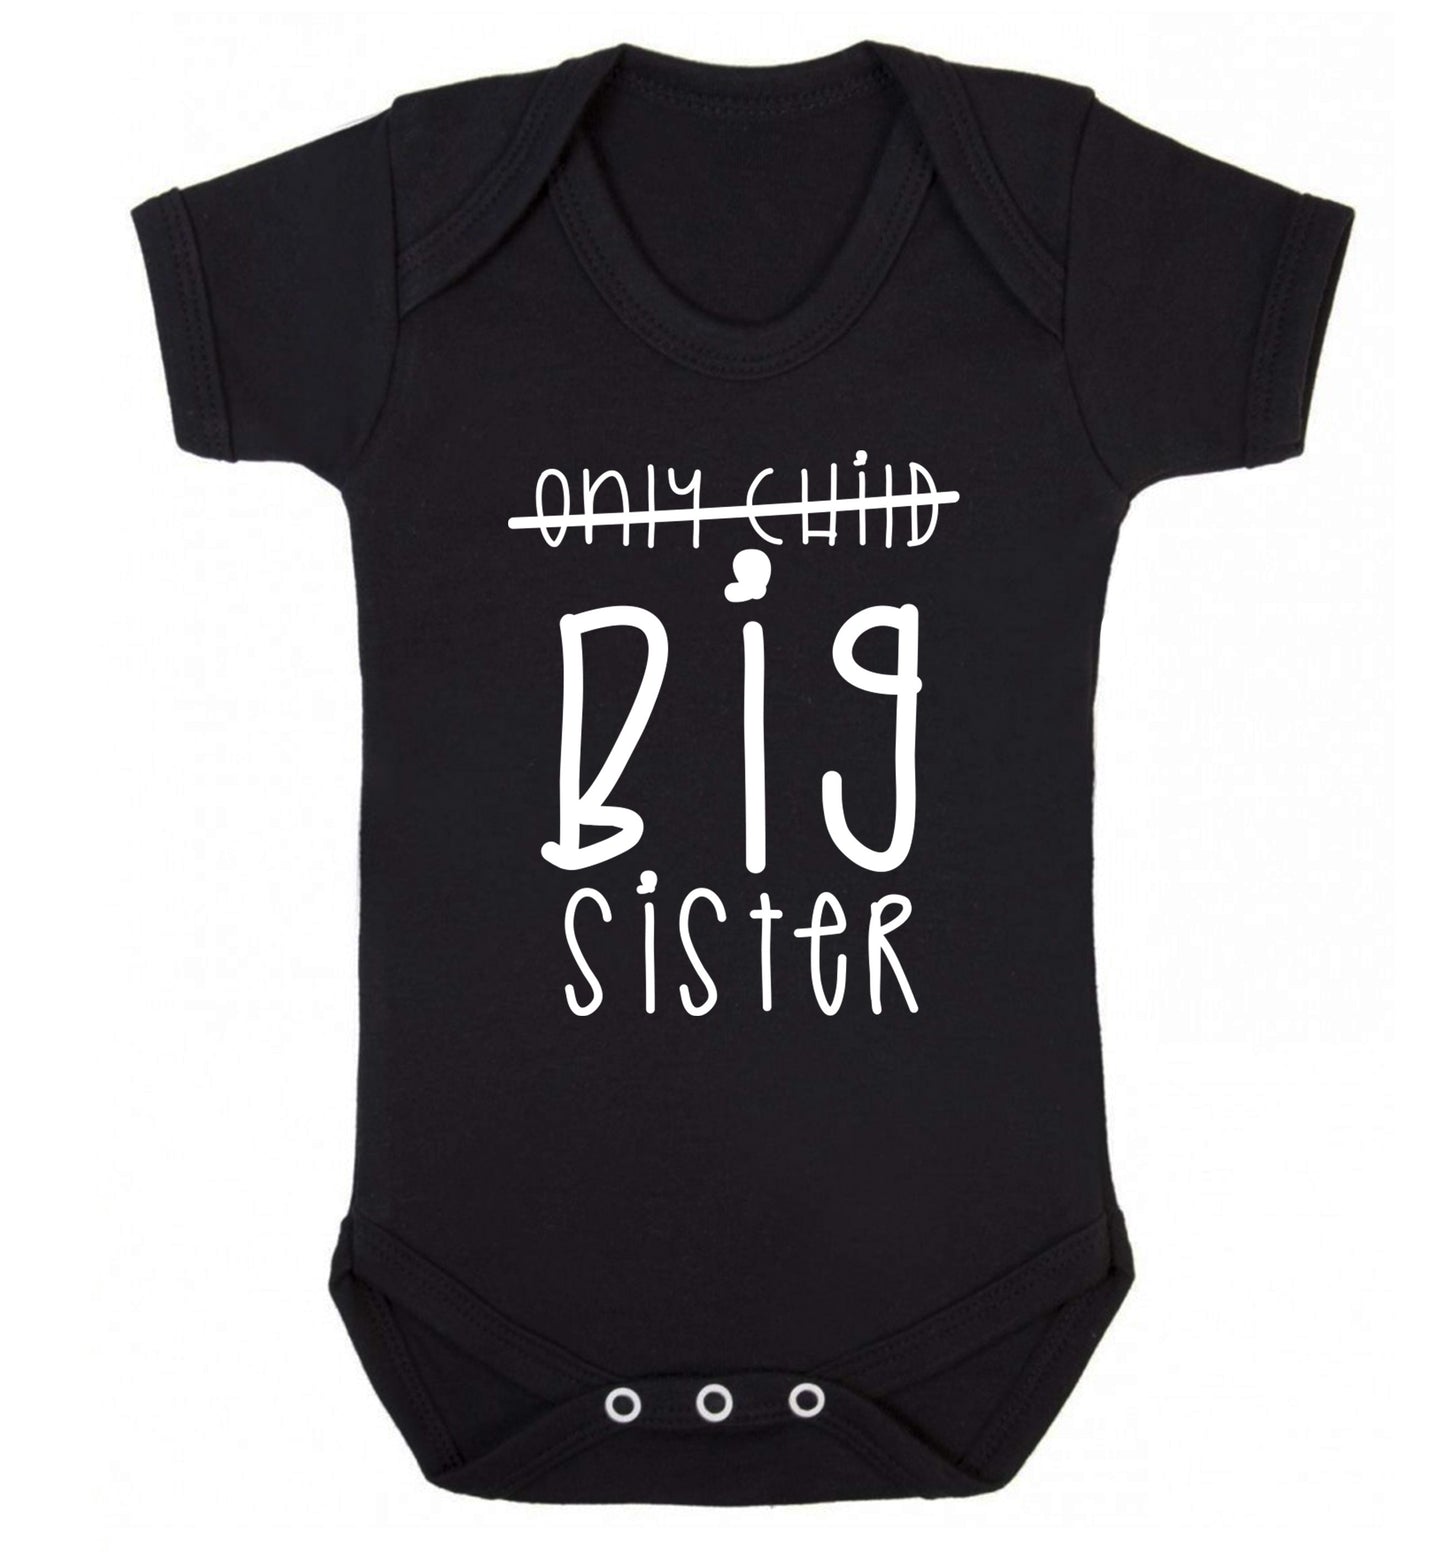 Only child big sister Baby Vest black 18-24 months